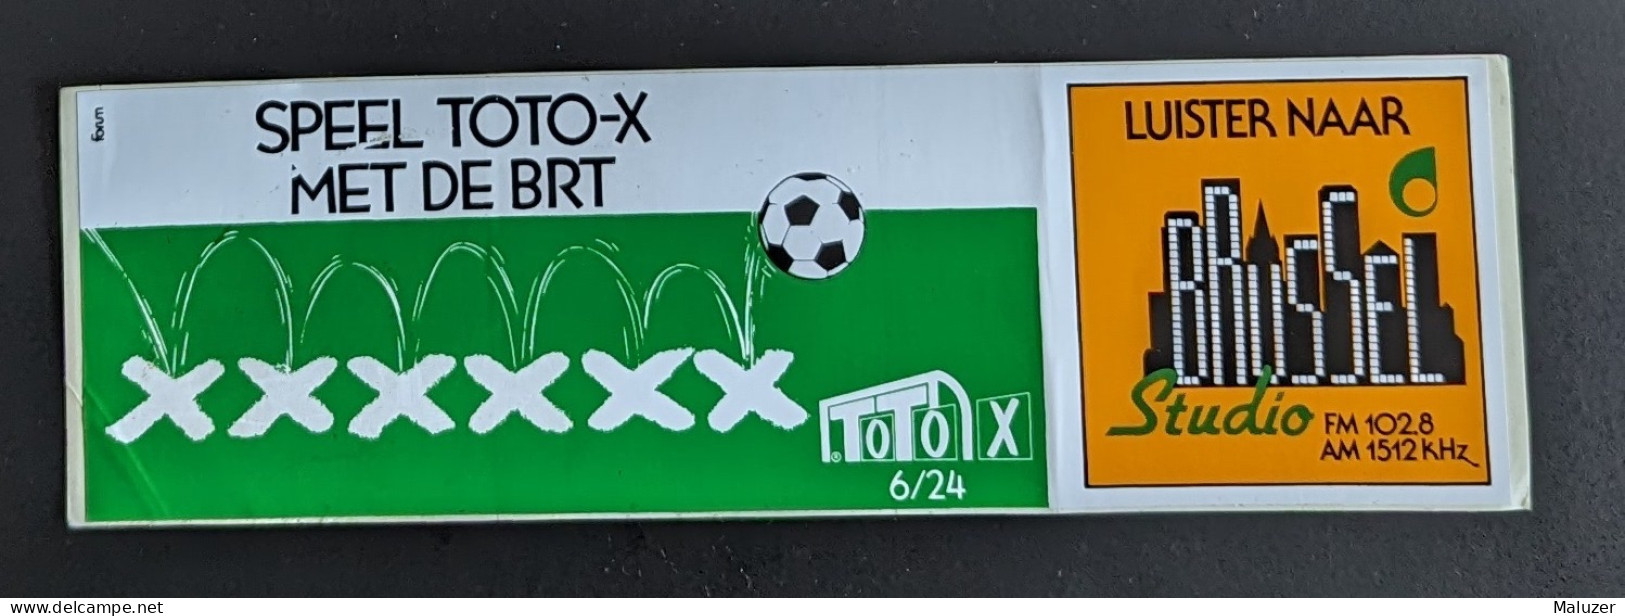 AUTOCOLLANT SPEEL TOTO-X MET DE BRT - BRUSSEL STUDIO - BRUXELLES - BELGIQUE BELGIË BELGIUM - Pegatinas